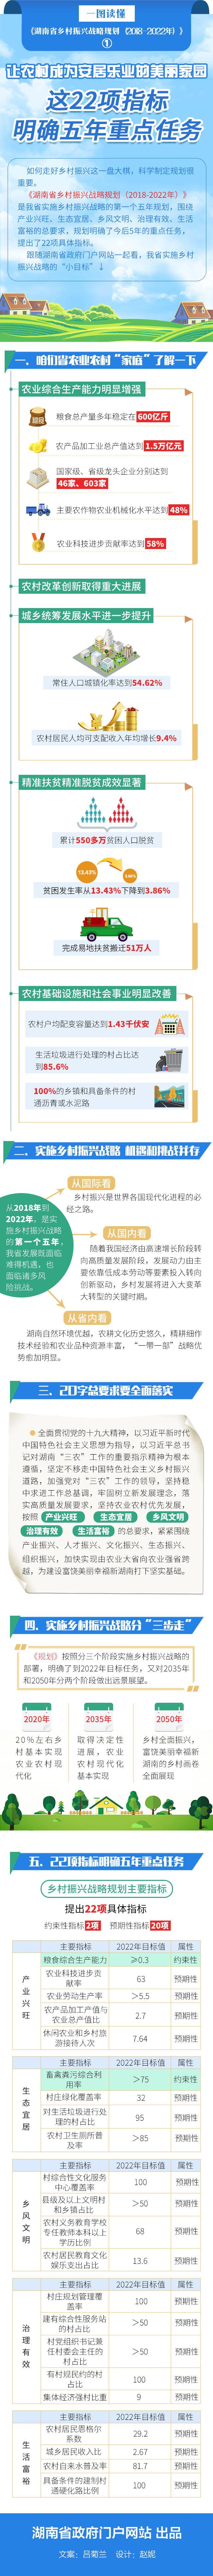 《湖南省乡村振兴战略规划》图解之一丨这22项指标明确五年重点任务